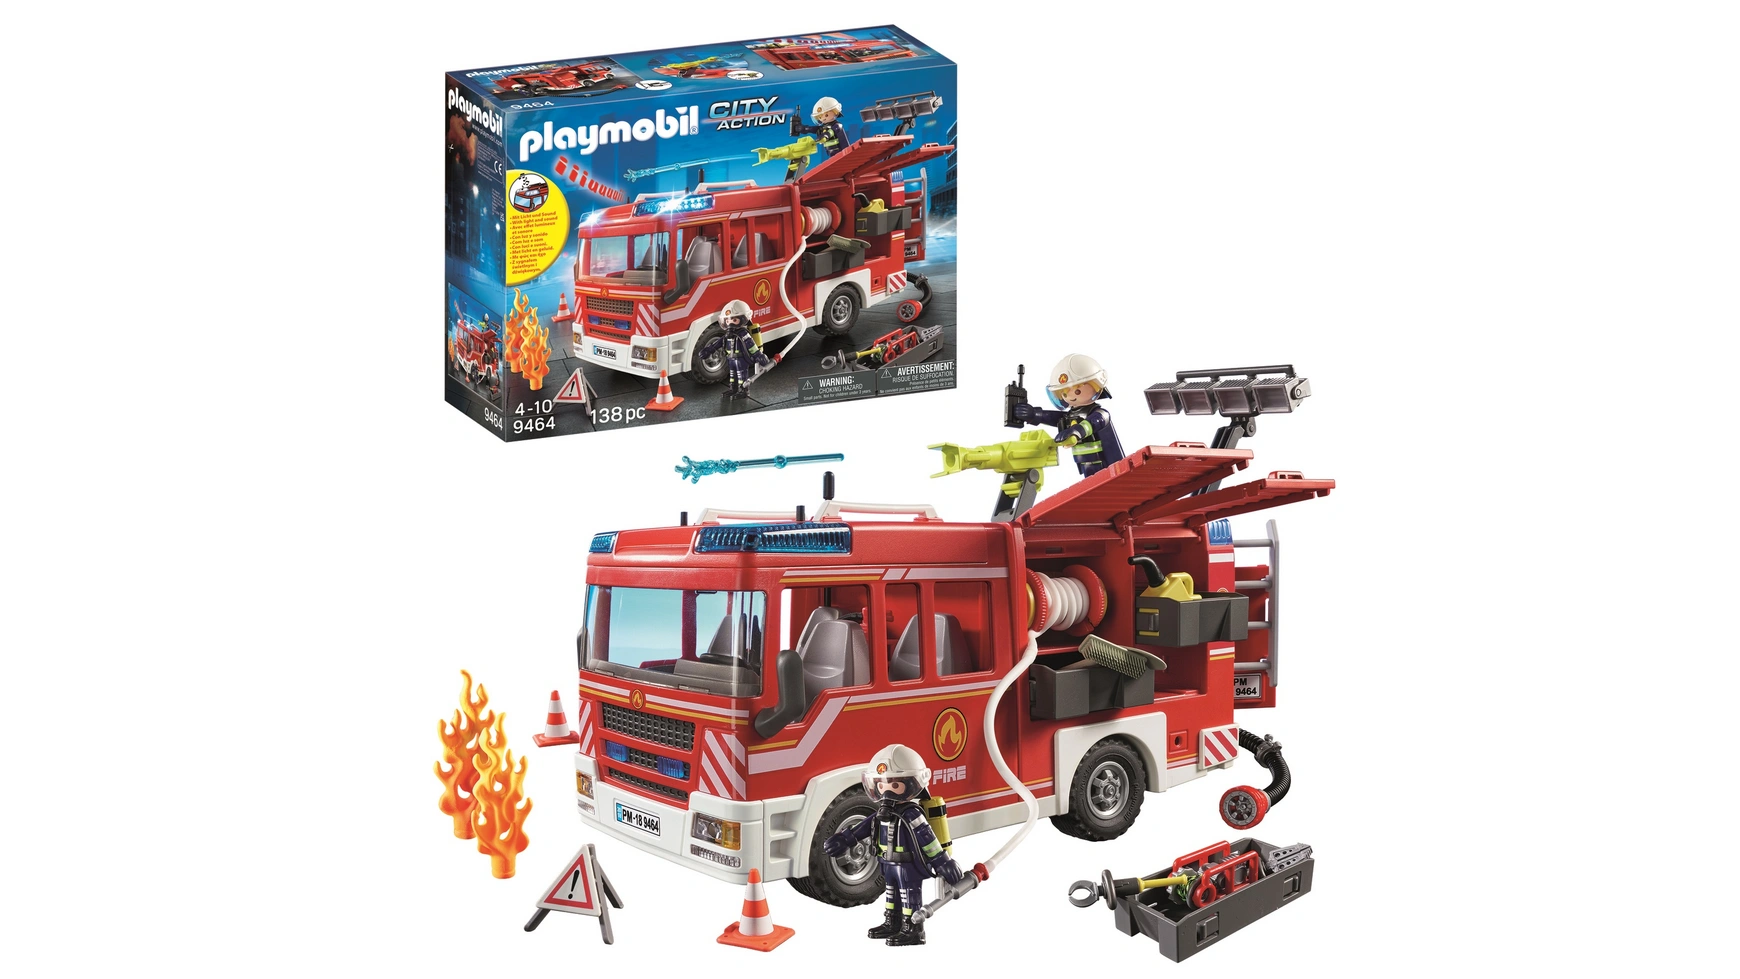 City action пожарно-спасательная машина Playmobil конструктор playmobil city action 9463 пожарная машина с лестницей 89 дет